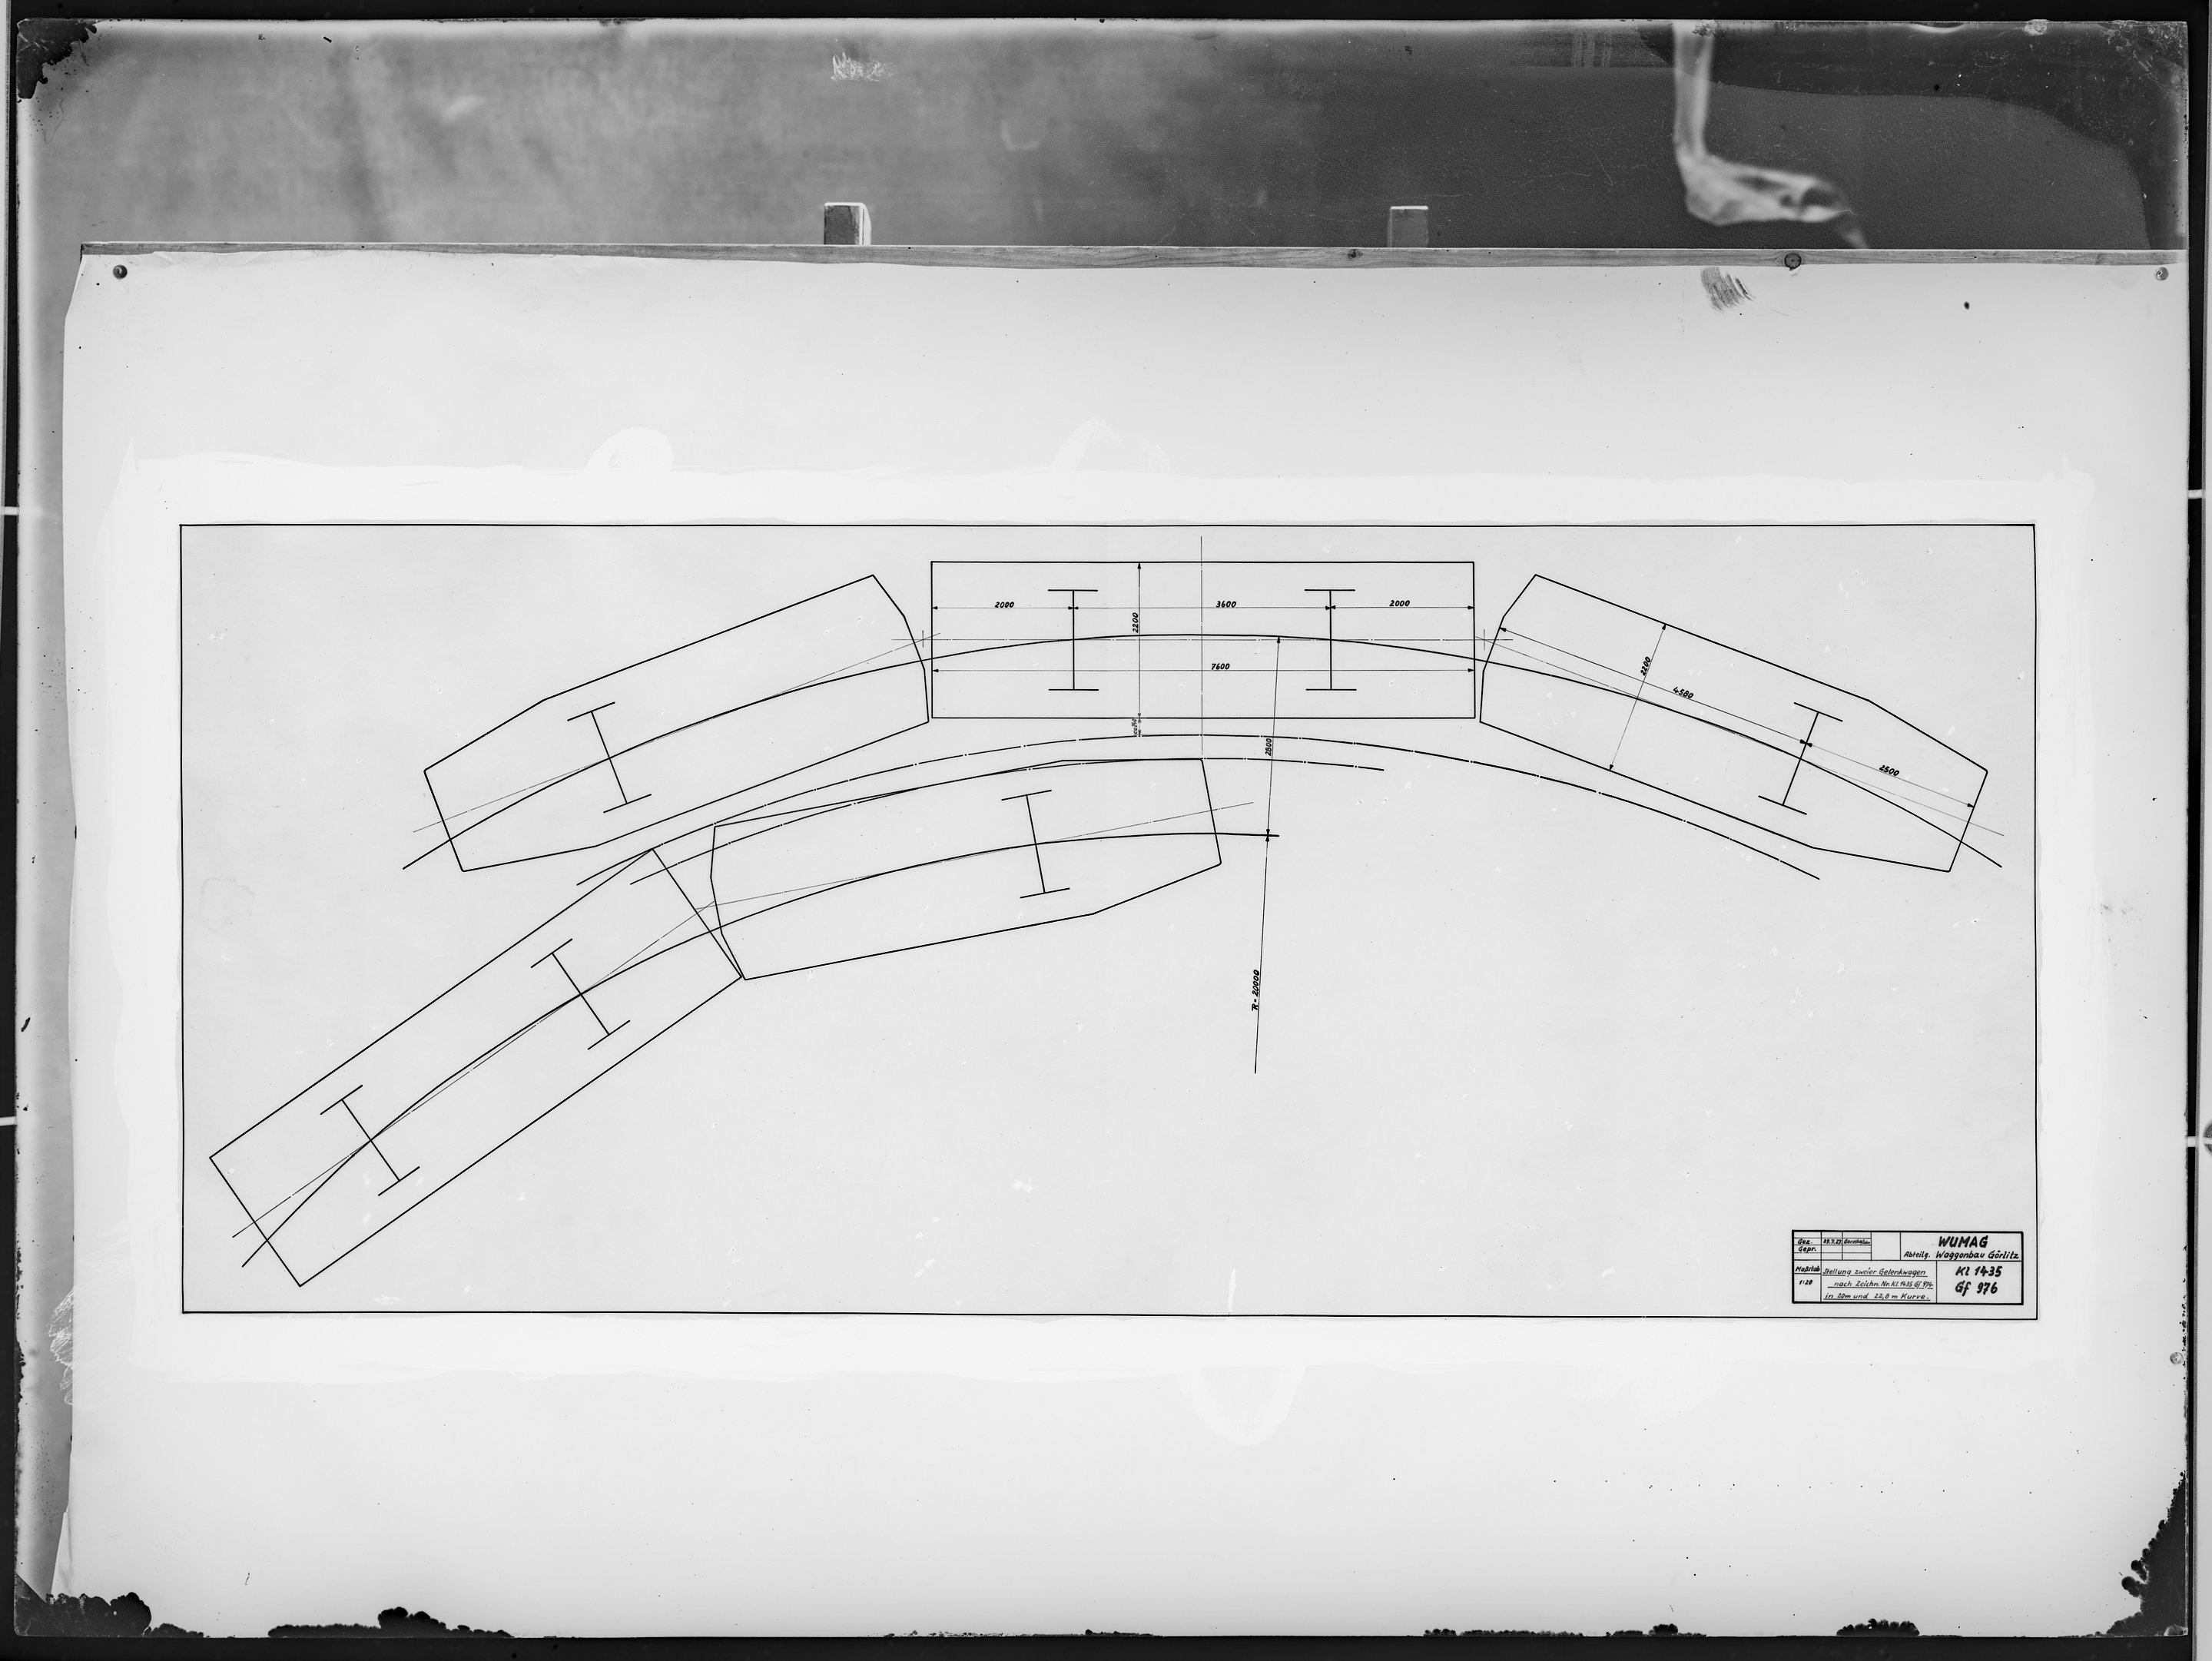 Fotografie: Maßskizze der Stellung zweier Gelenkwagen nach Zeichnung Nr. Kl 1435 Gf 976 in 20 m und 22,8 m Kurve, Maßstab 1:20, (Spurweite: 1435 mm),  (Verkehrsmuseum Dresden CC BY-NC-SA)